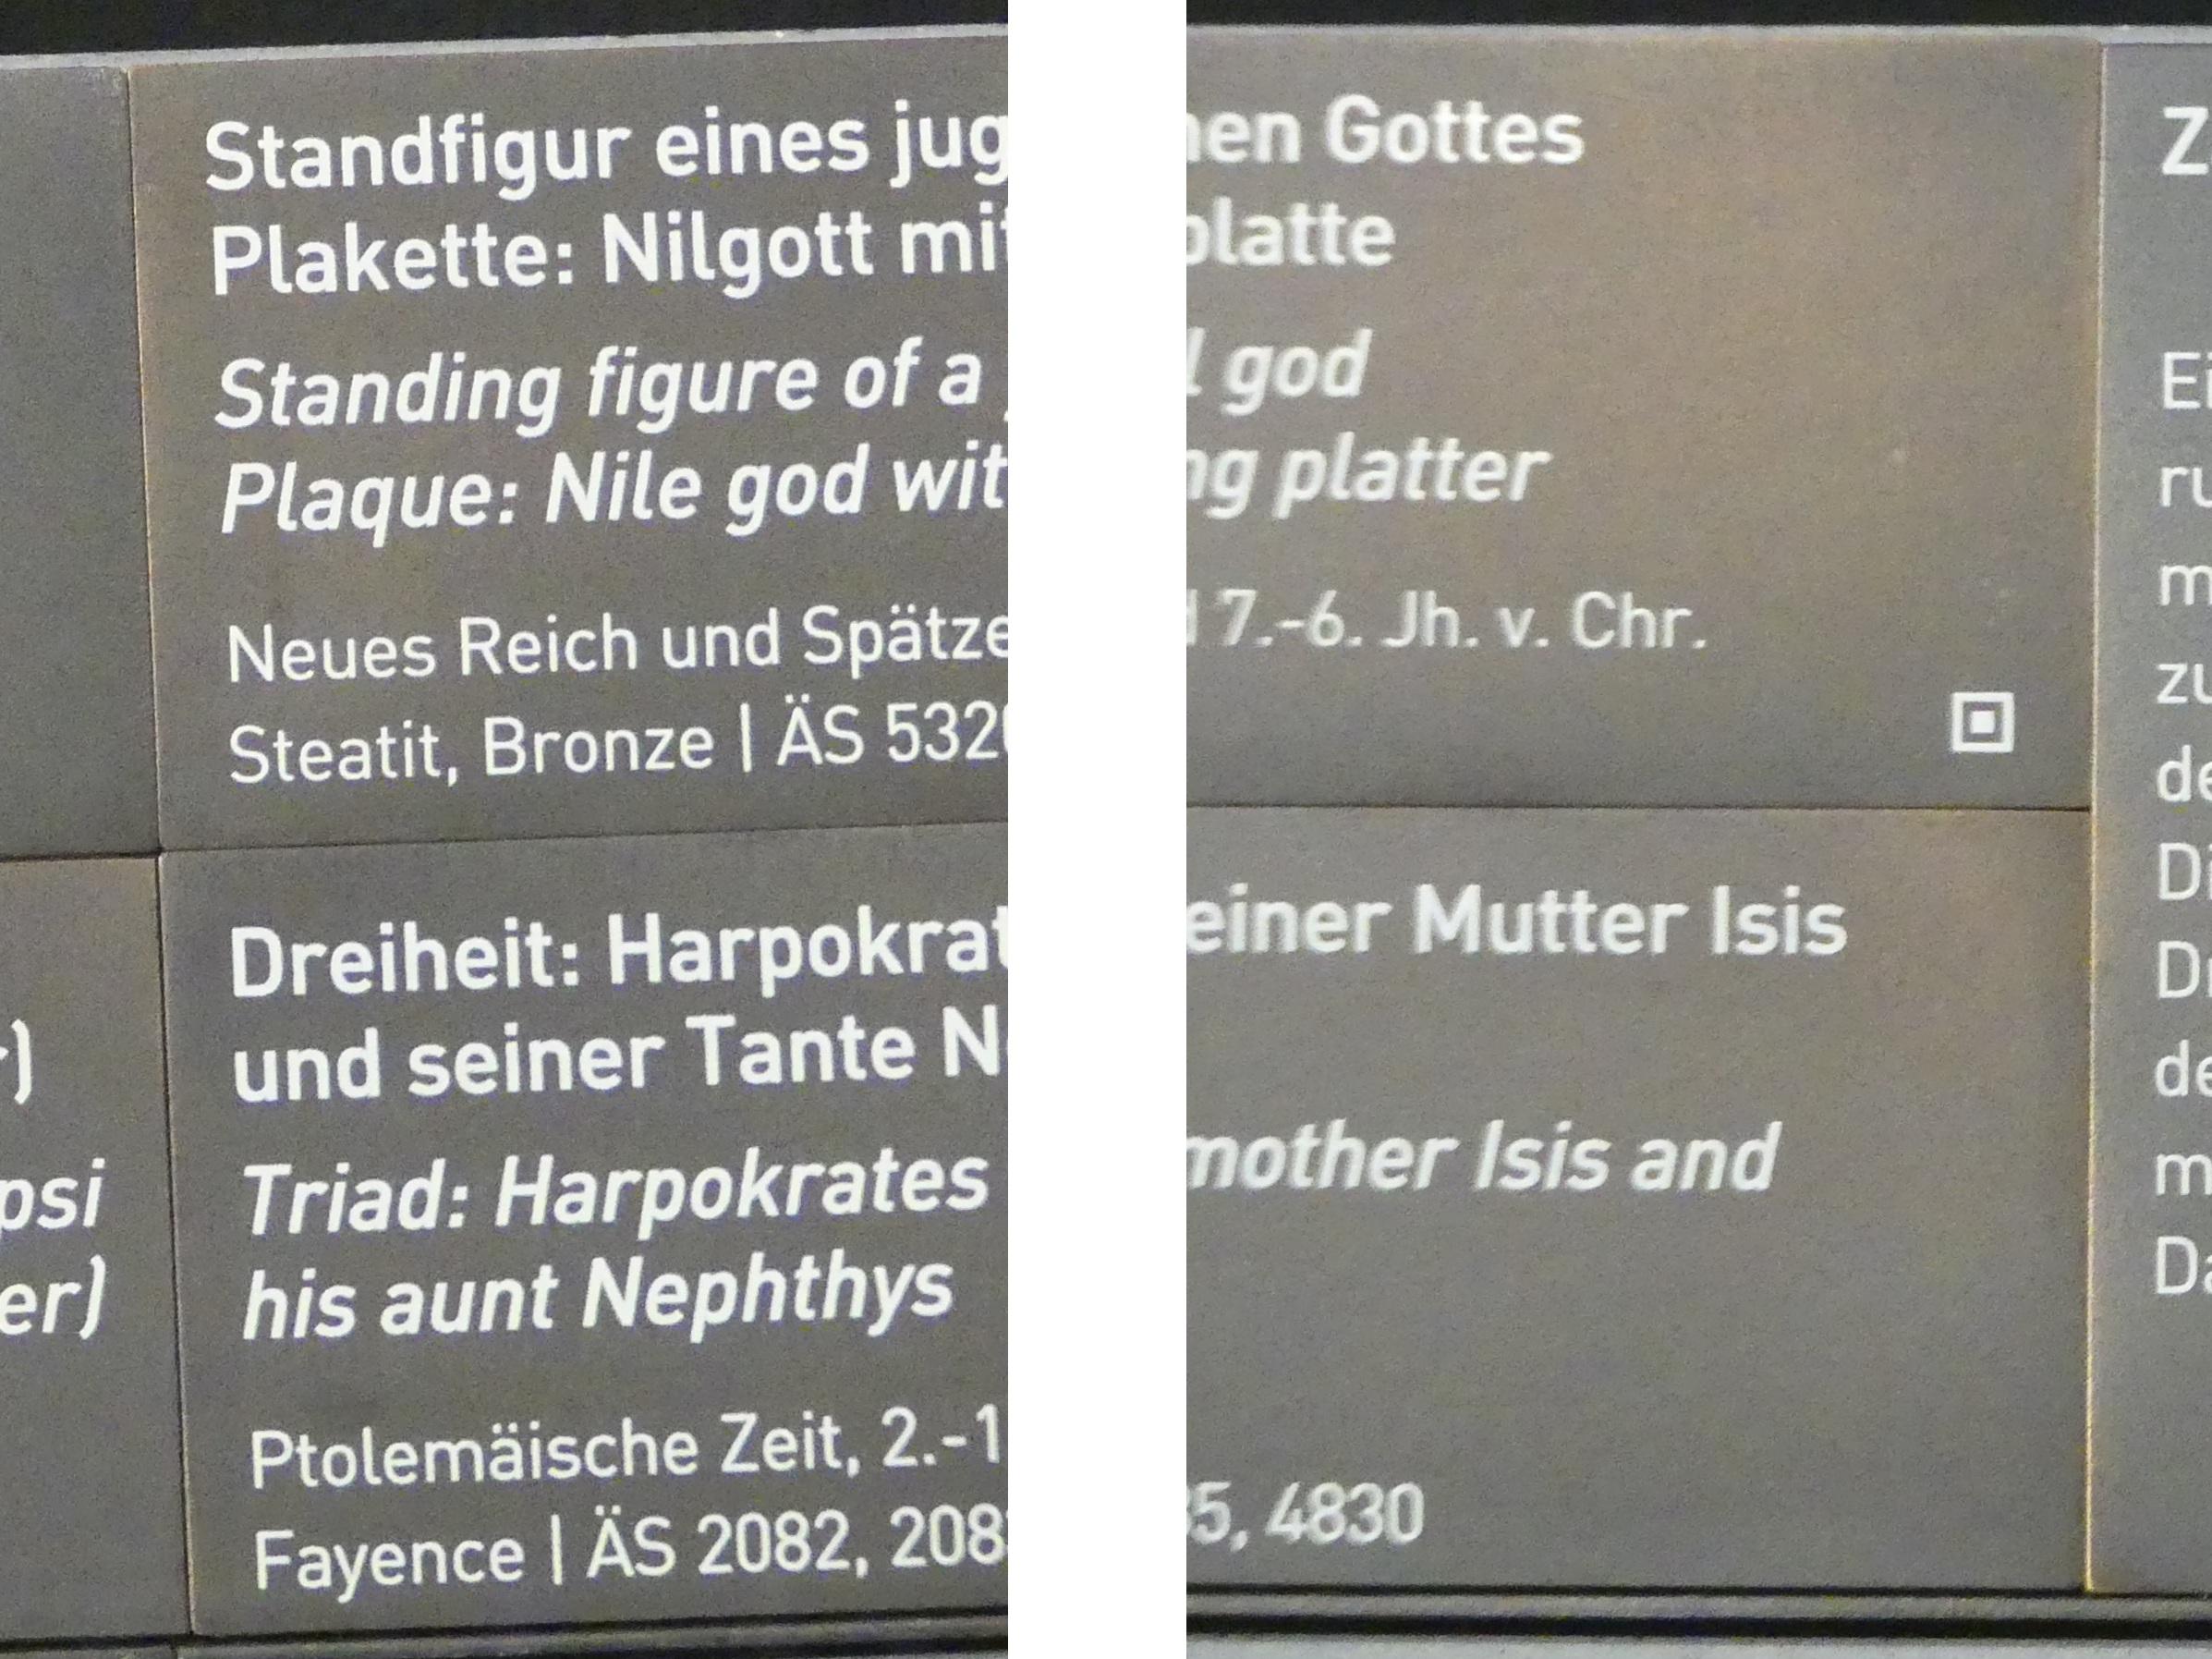 Plakette: Nilgott mit Opferplatte, Neues Reich, 1210 - 835 v. Chr., Bild 2/2